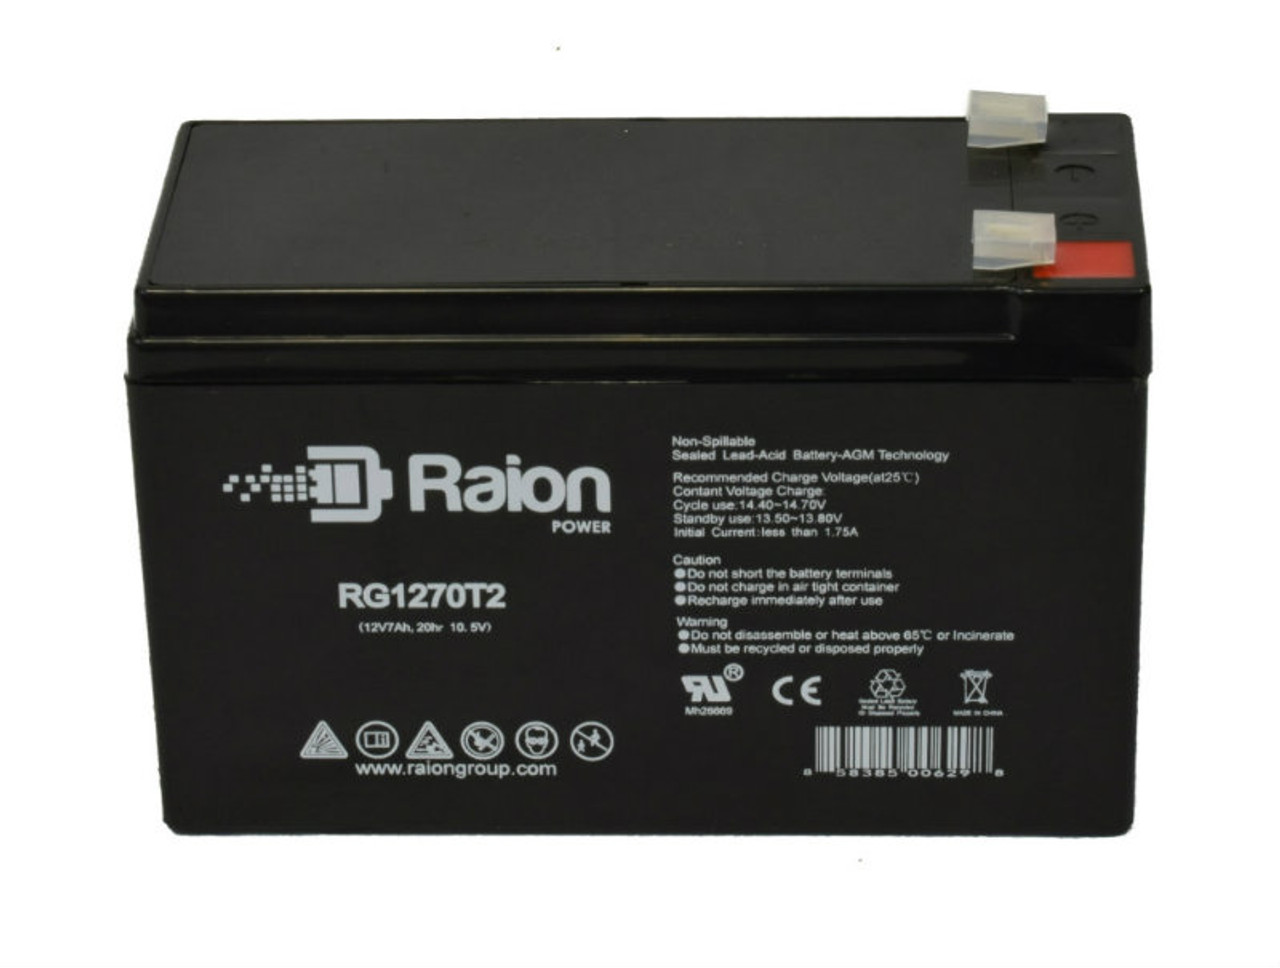 Raion Power RG1270T1 12V 7Ah Lead Acid Battery for Digital Security Power864 (Option 2)